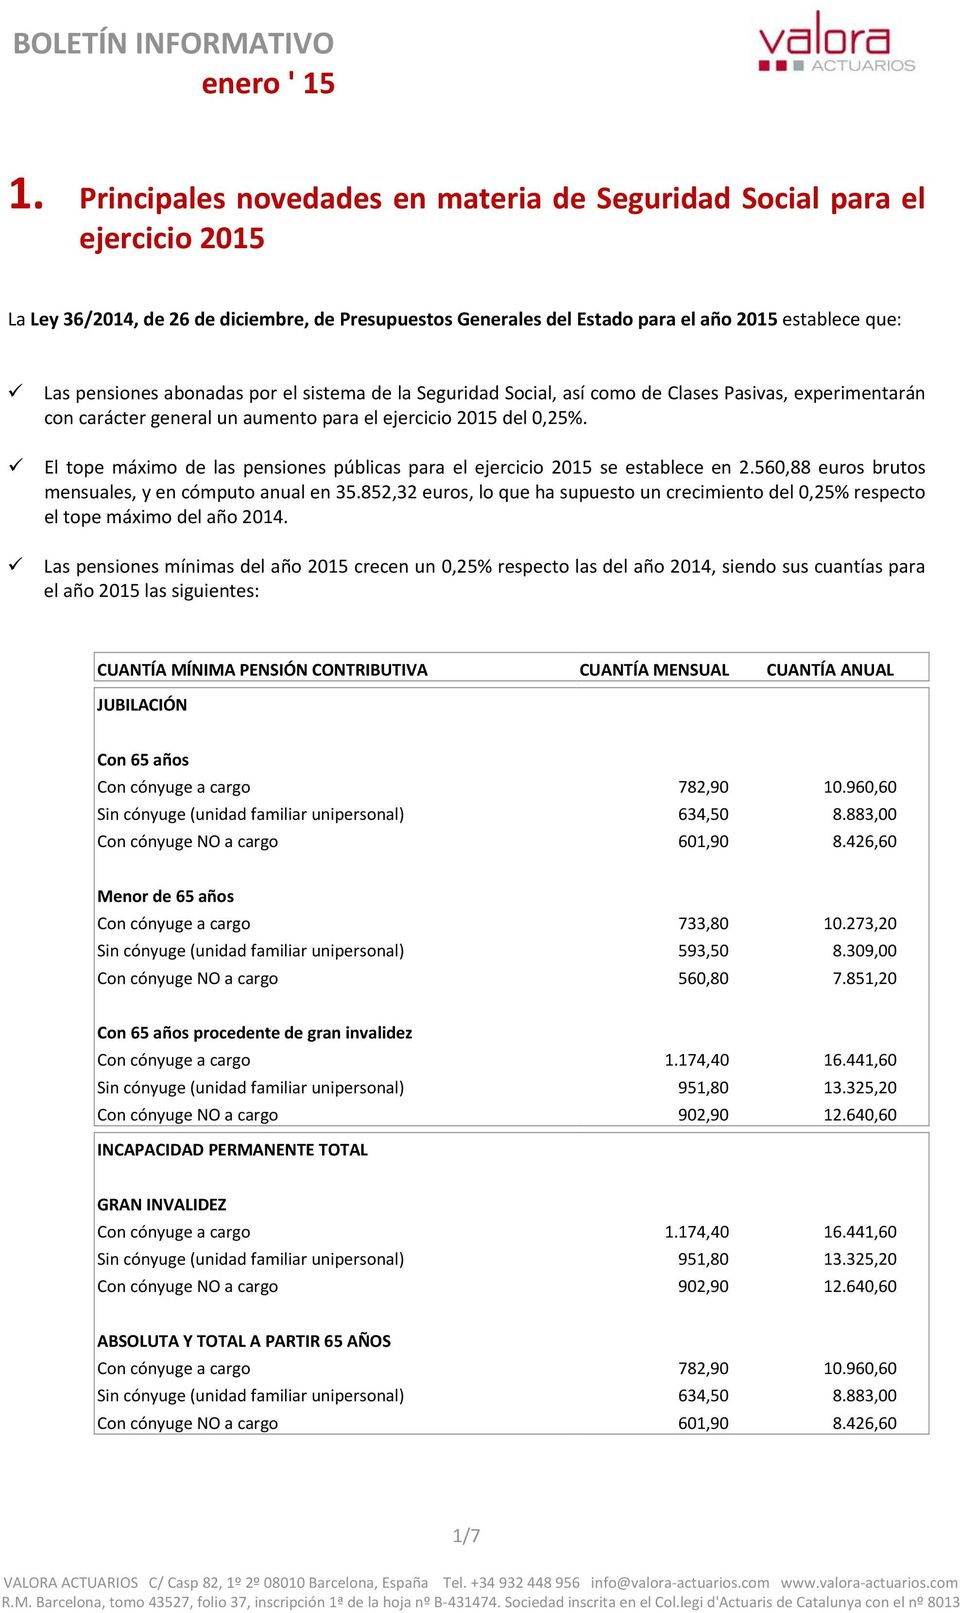 El tope máximo de las pensiones públicas para el ejercicio 2015 se establece en 2.560,88 euros brutos mensuales, y en cómputo anual en 35.